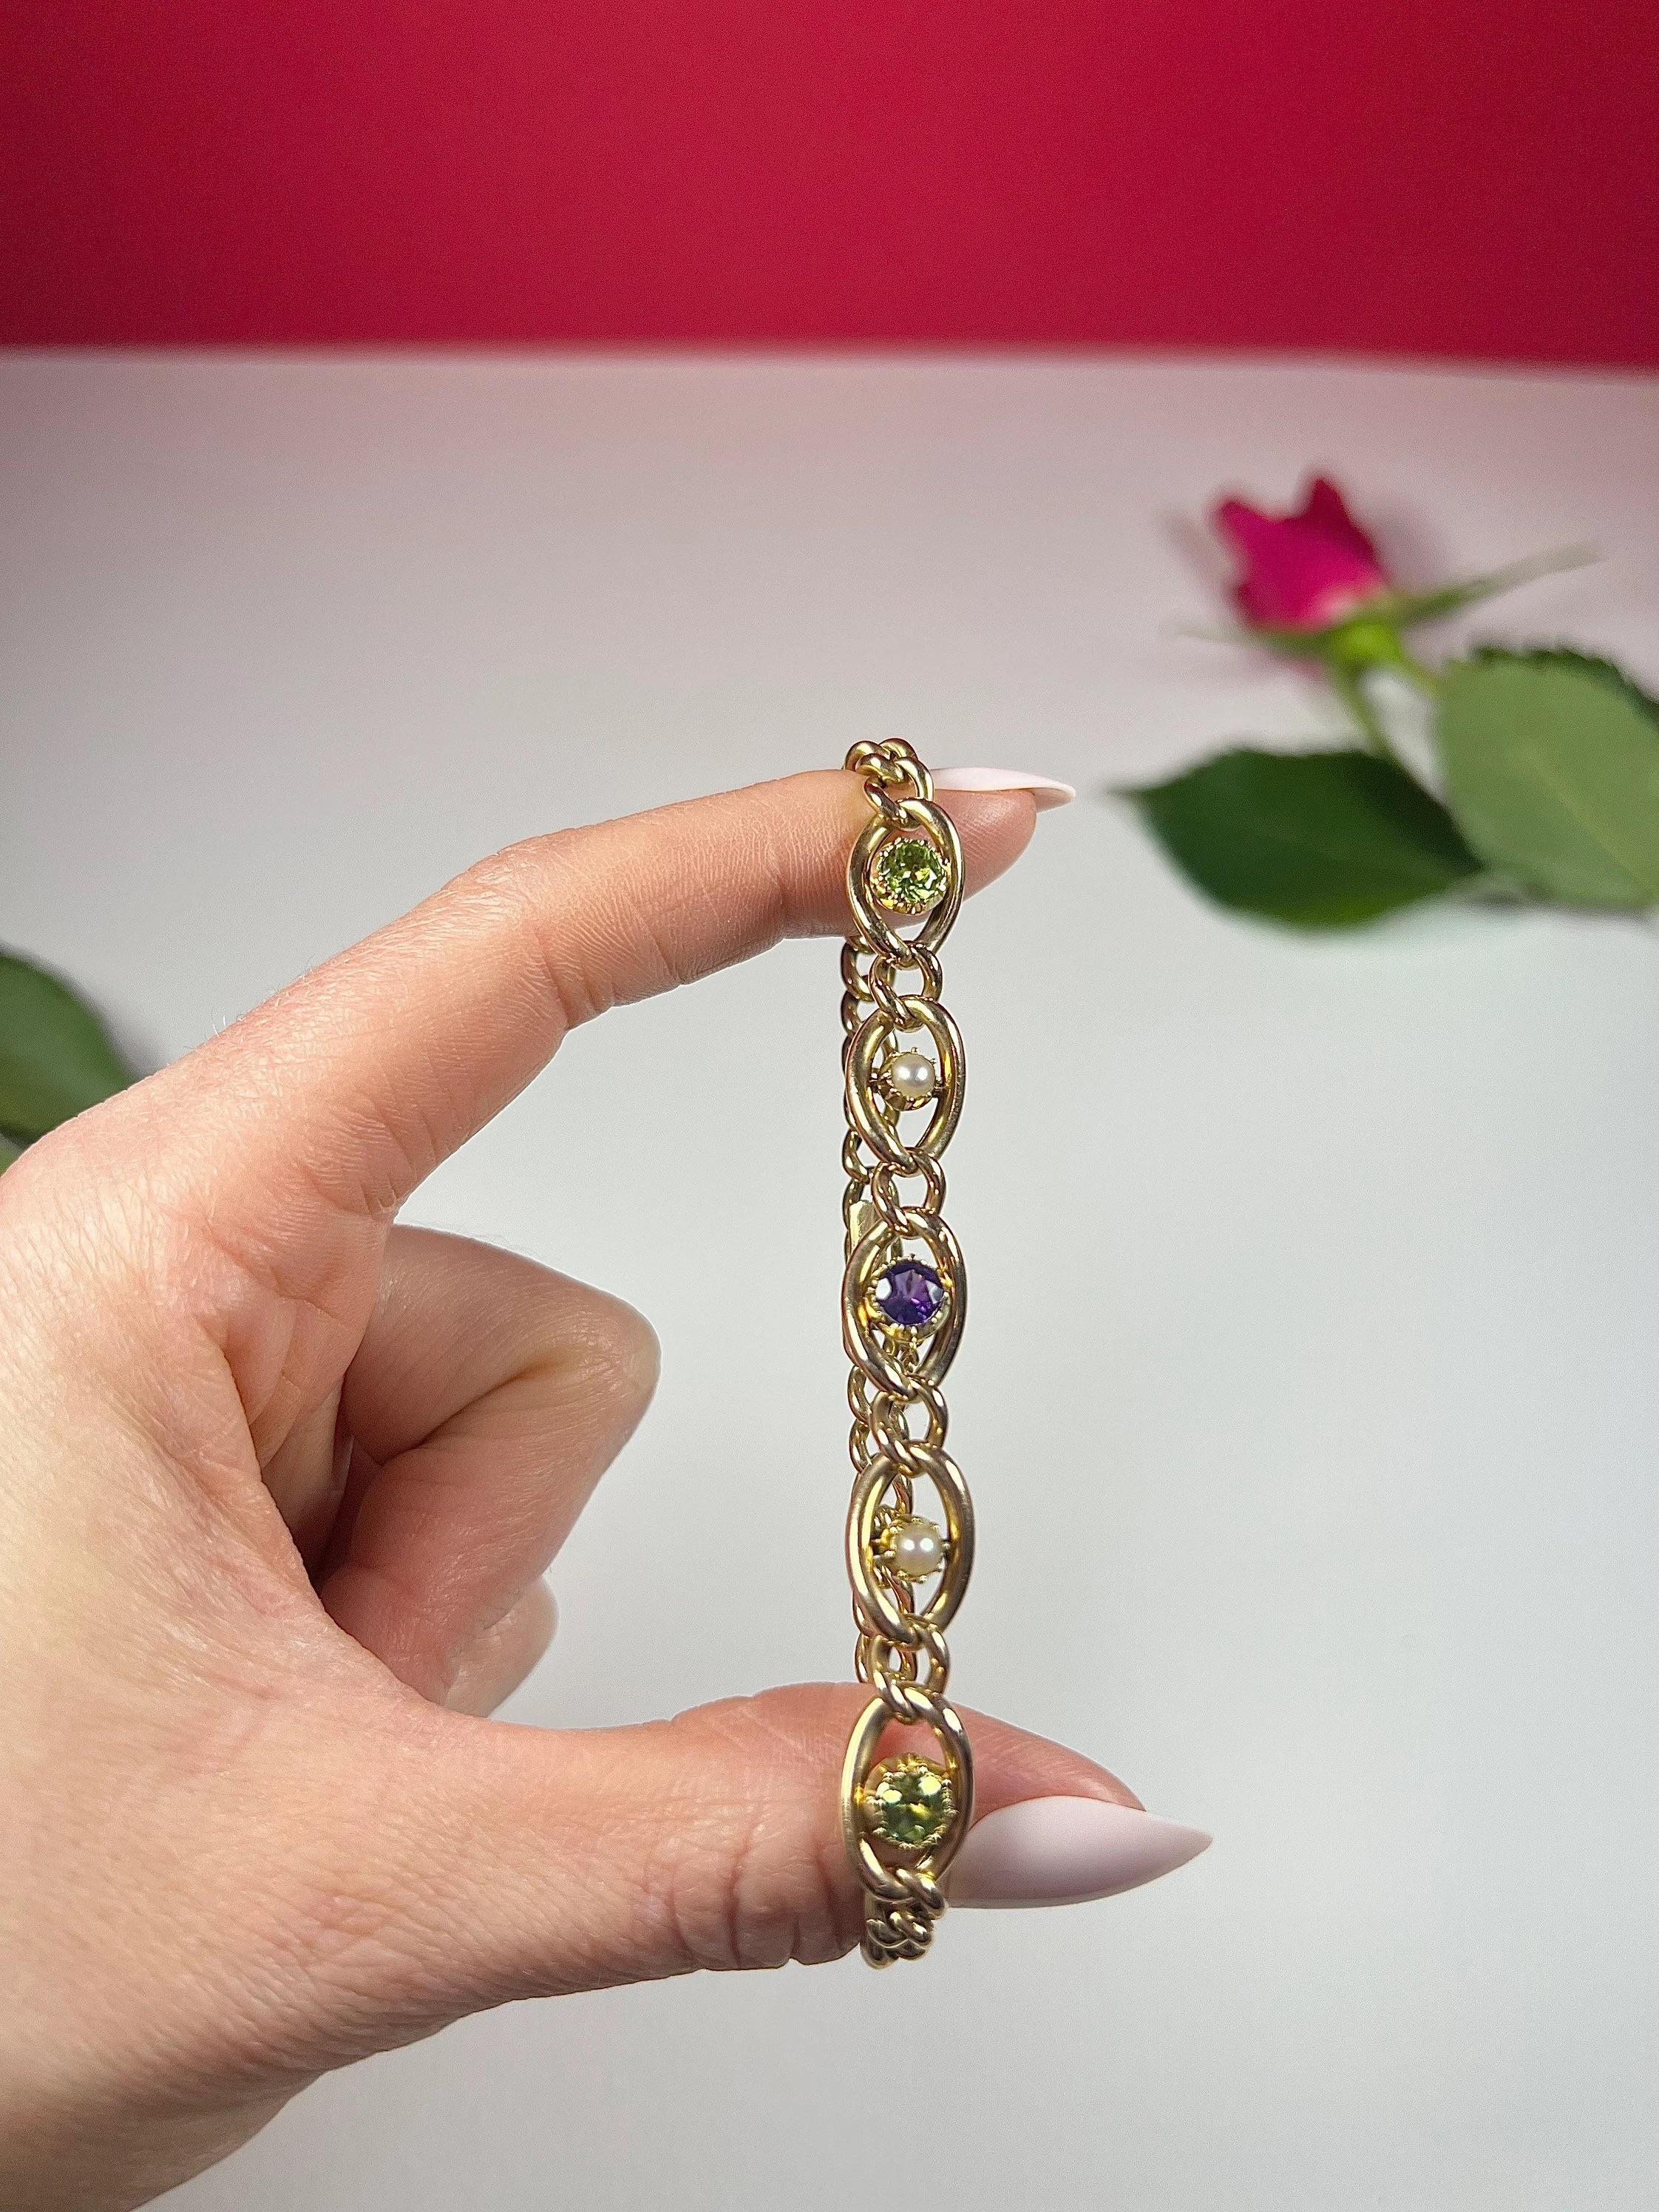 Antique 9ct Gold Edwardian Suffragette Curb Link Bracelet For Sale 4